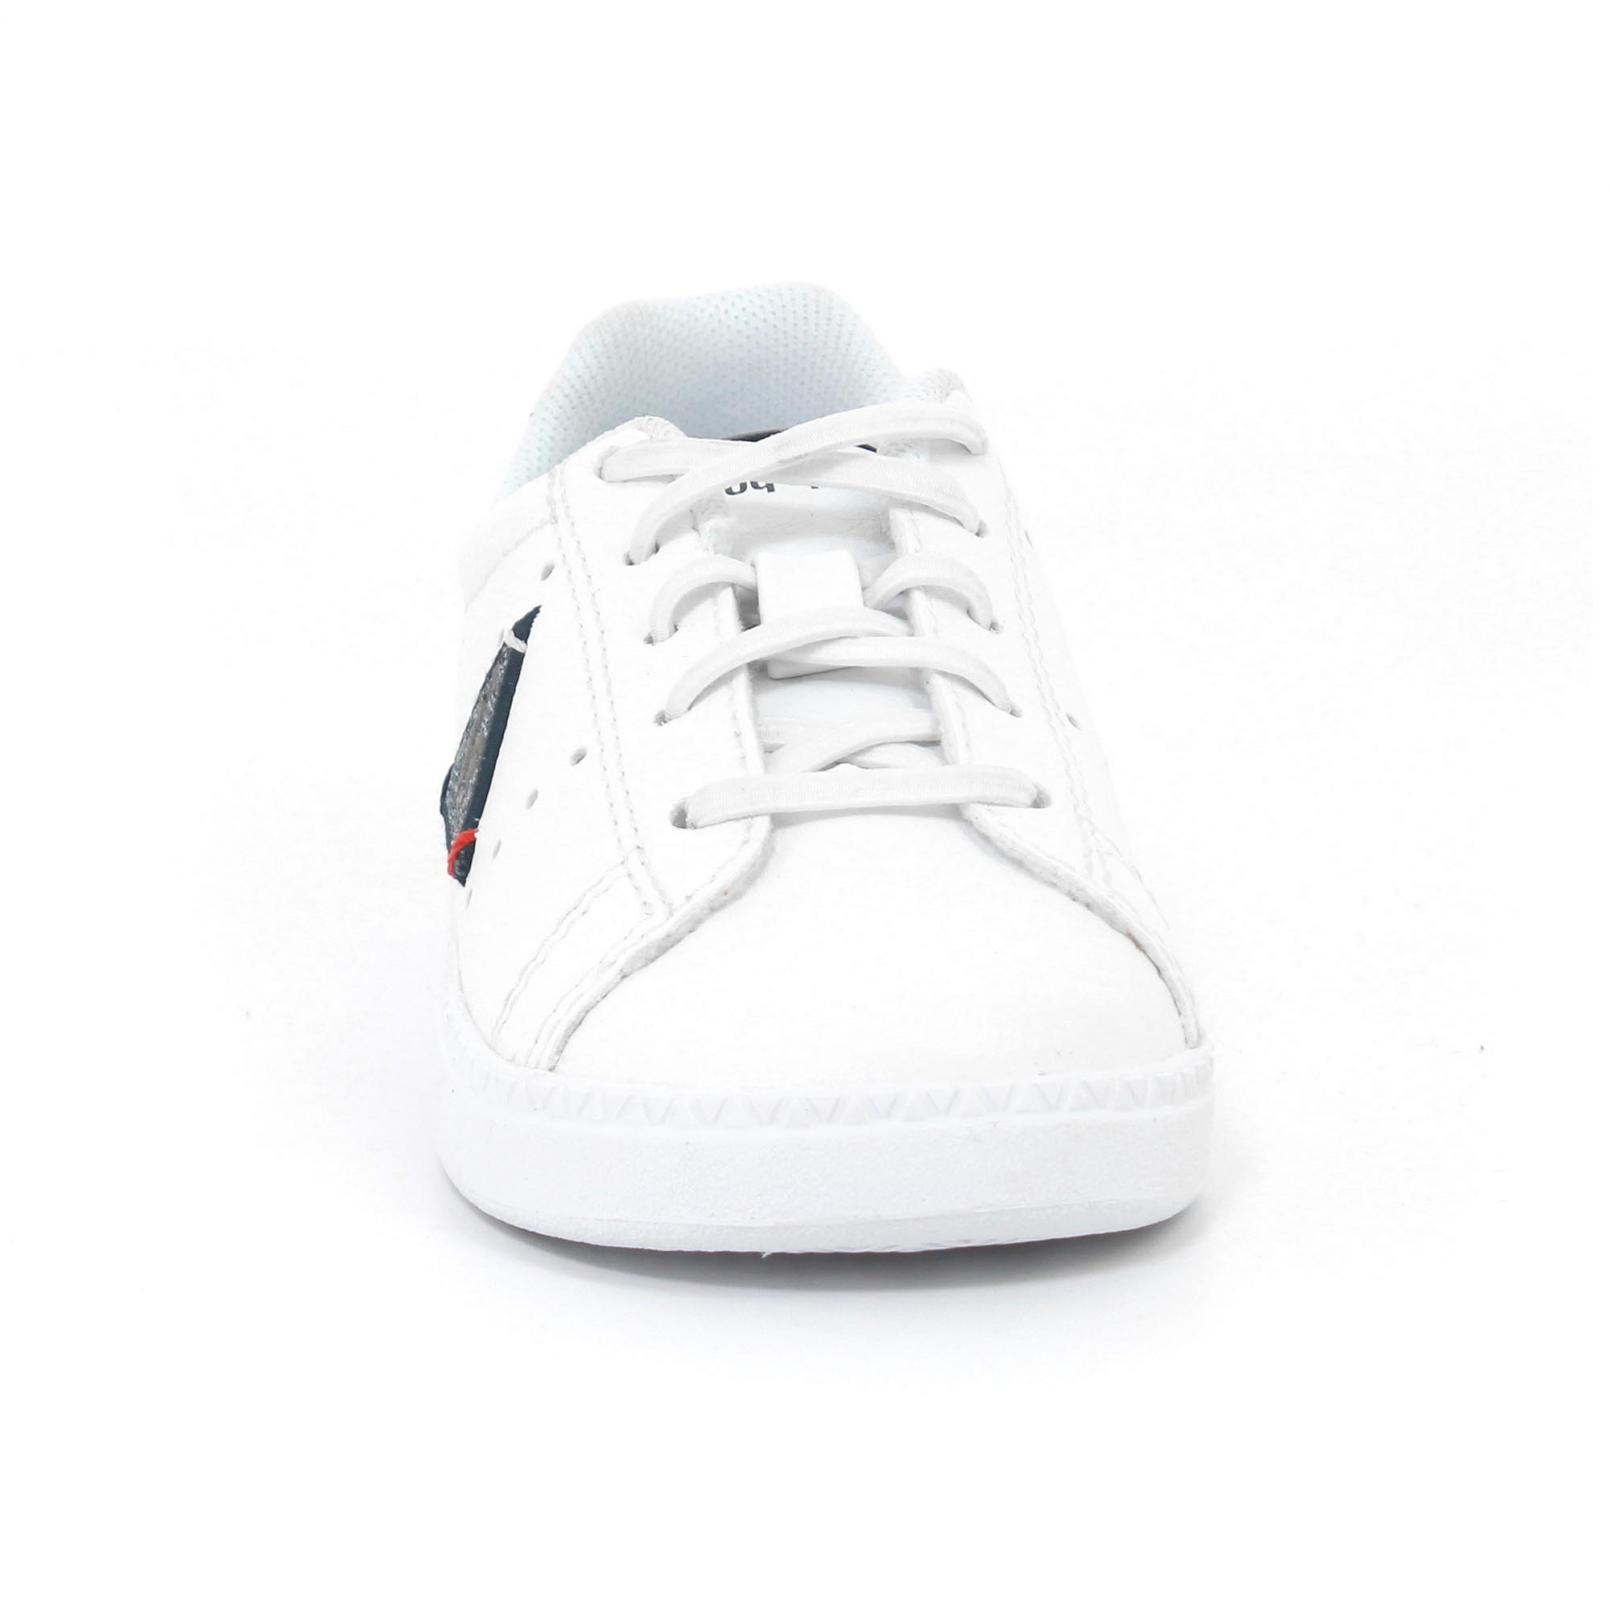 Shoes – Le Coq Sportif Courtone Inf S Lea/2 Tones White/Blue